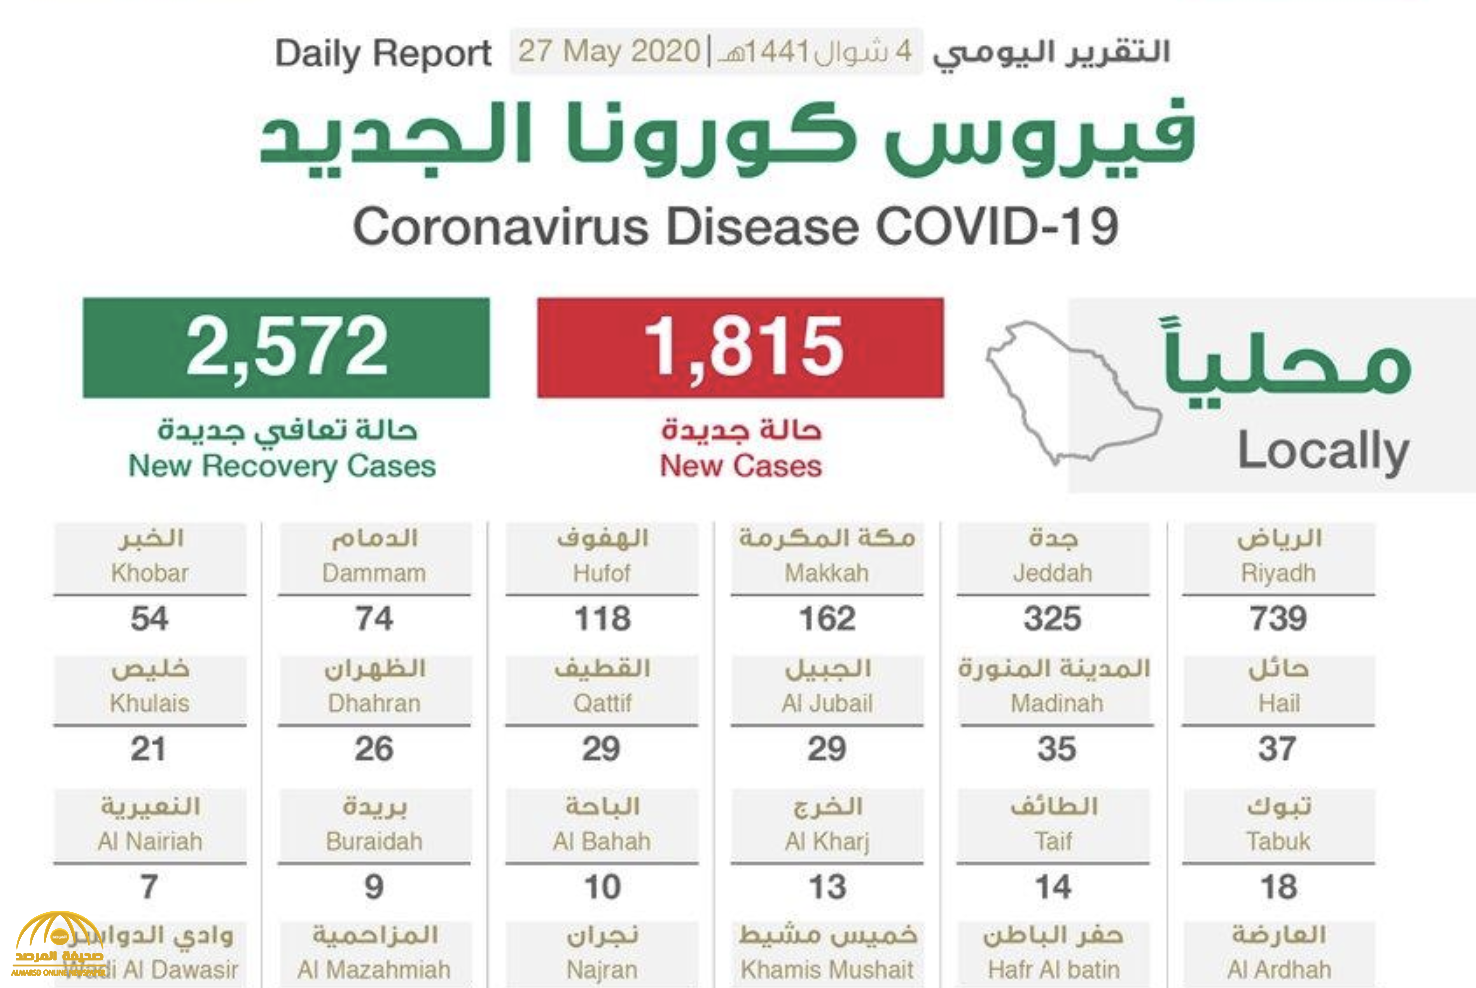 شاهد “إنفوجرافيك ” حول توزيع حالات الإصابة الجديدة بكورونا بحسب المناطق والمدن اليوم الأربعاء